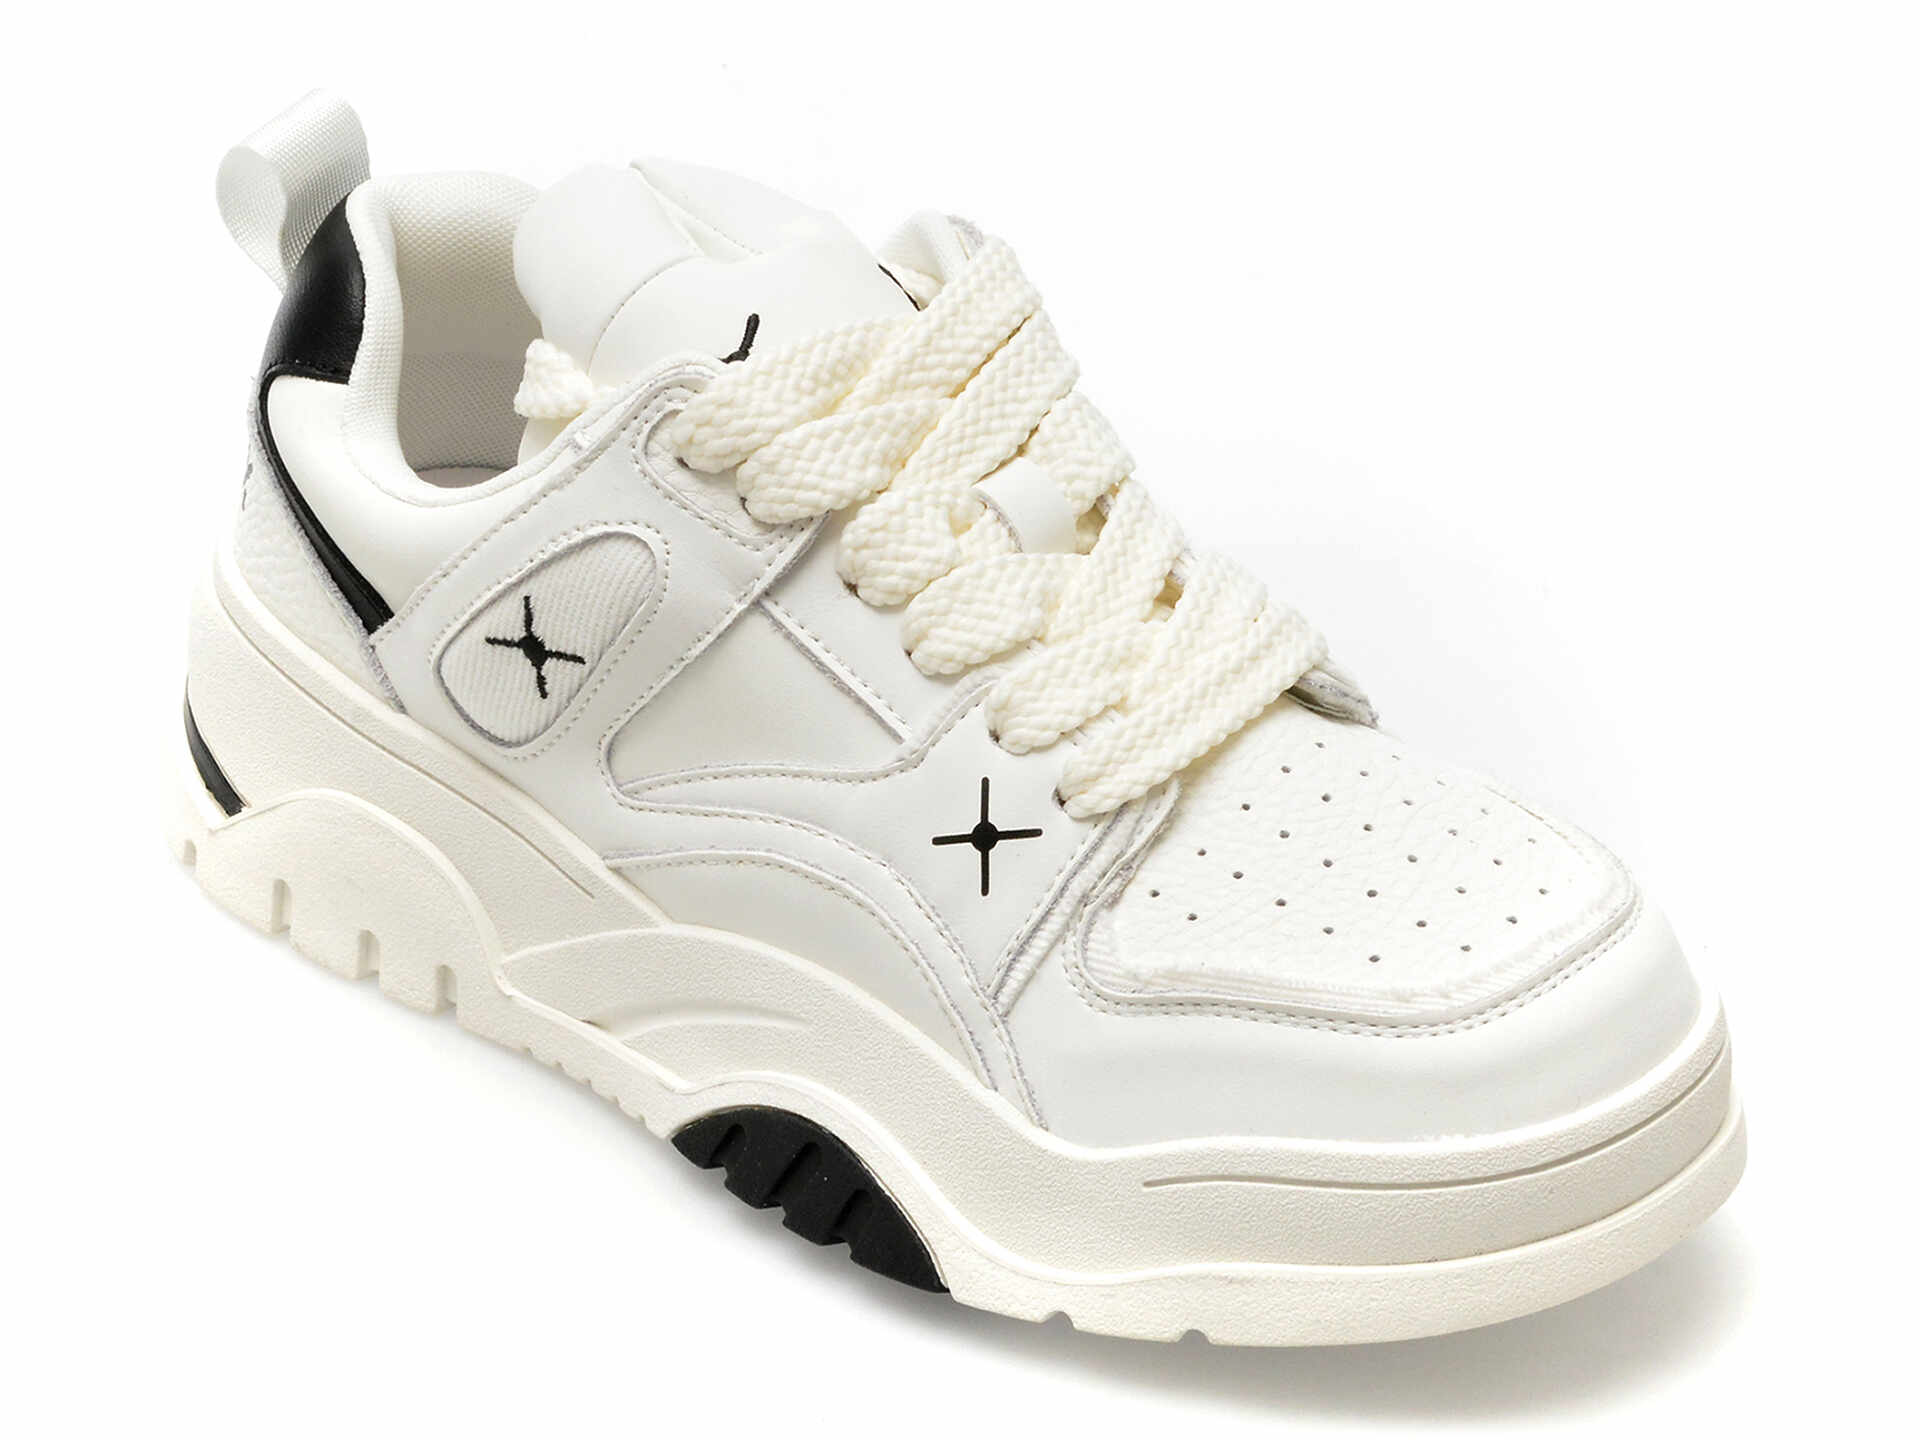 Pantofi GRYXX albi, 23089, din piele naturala